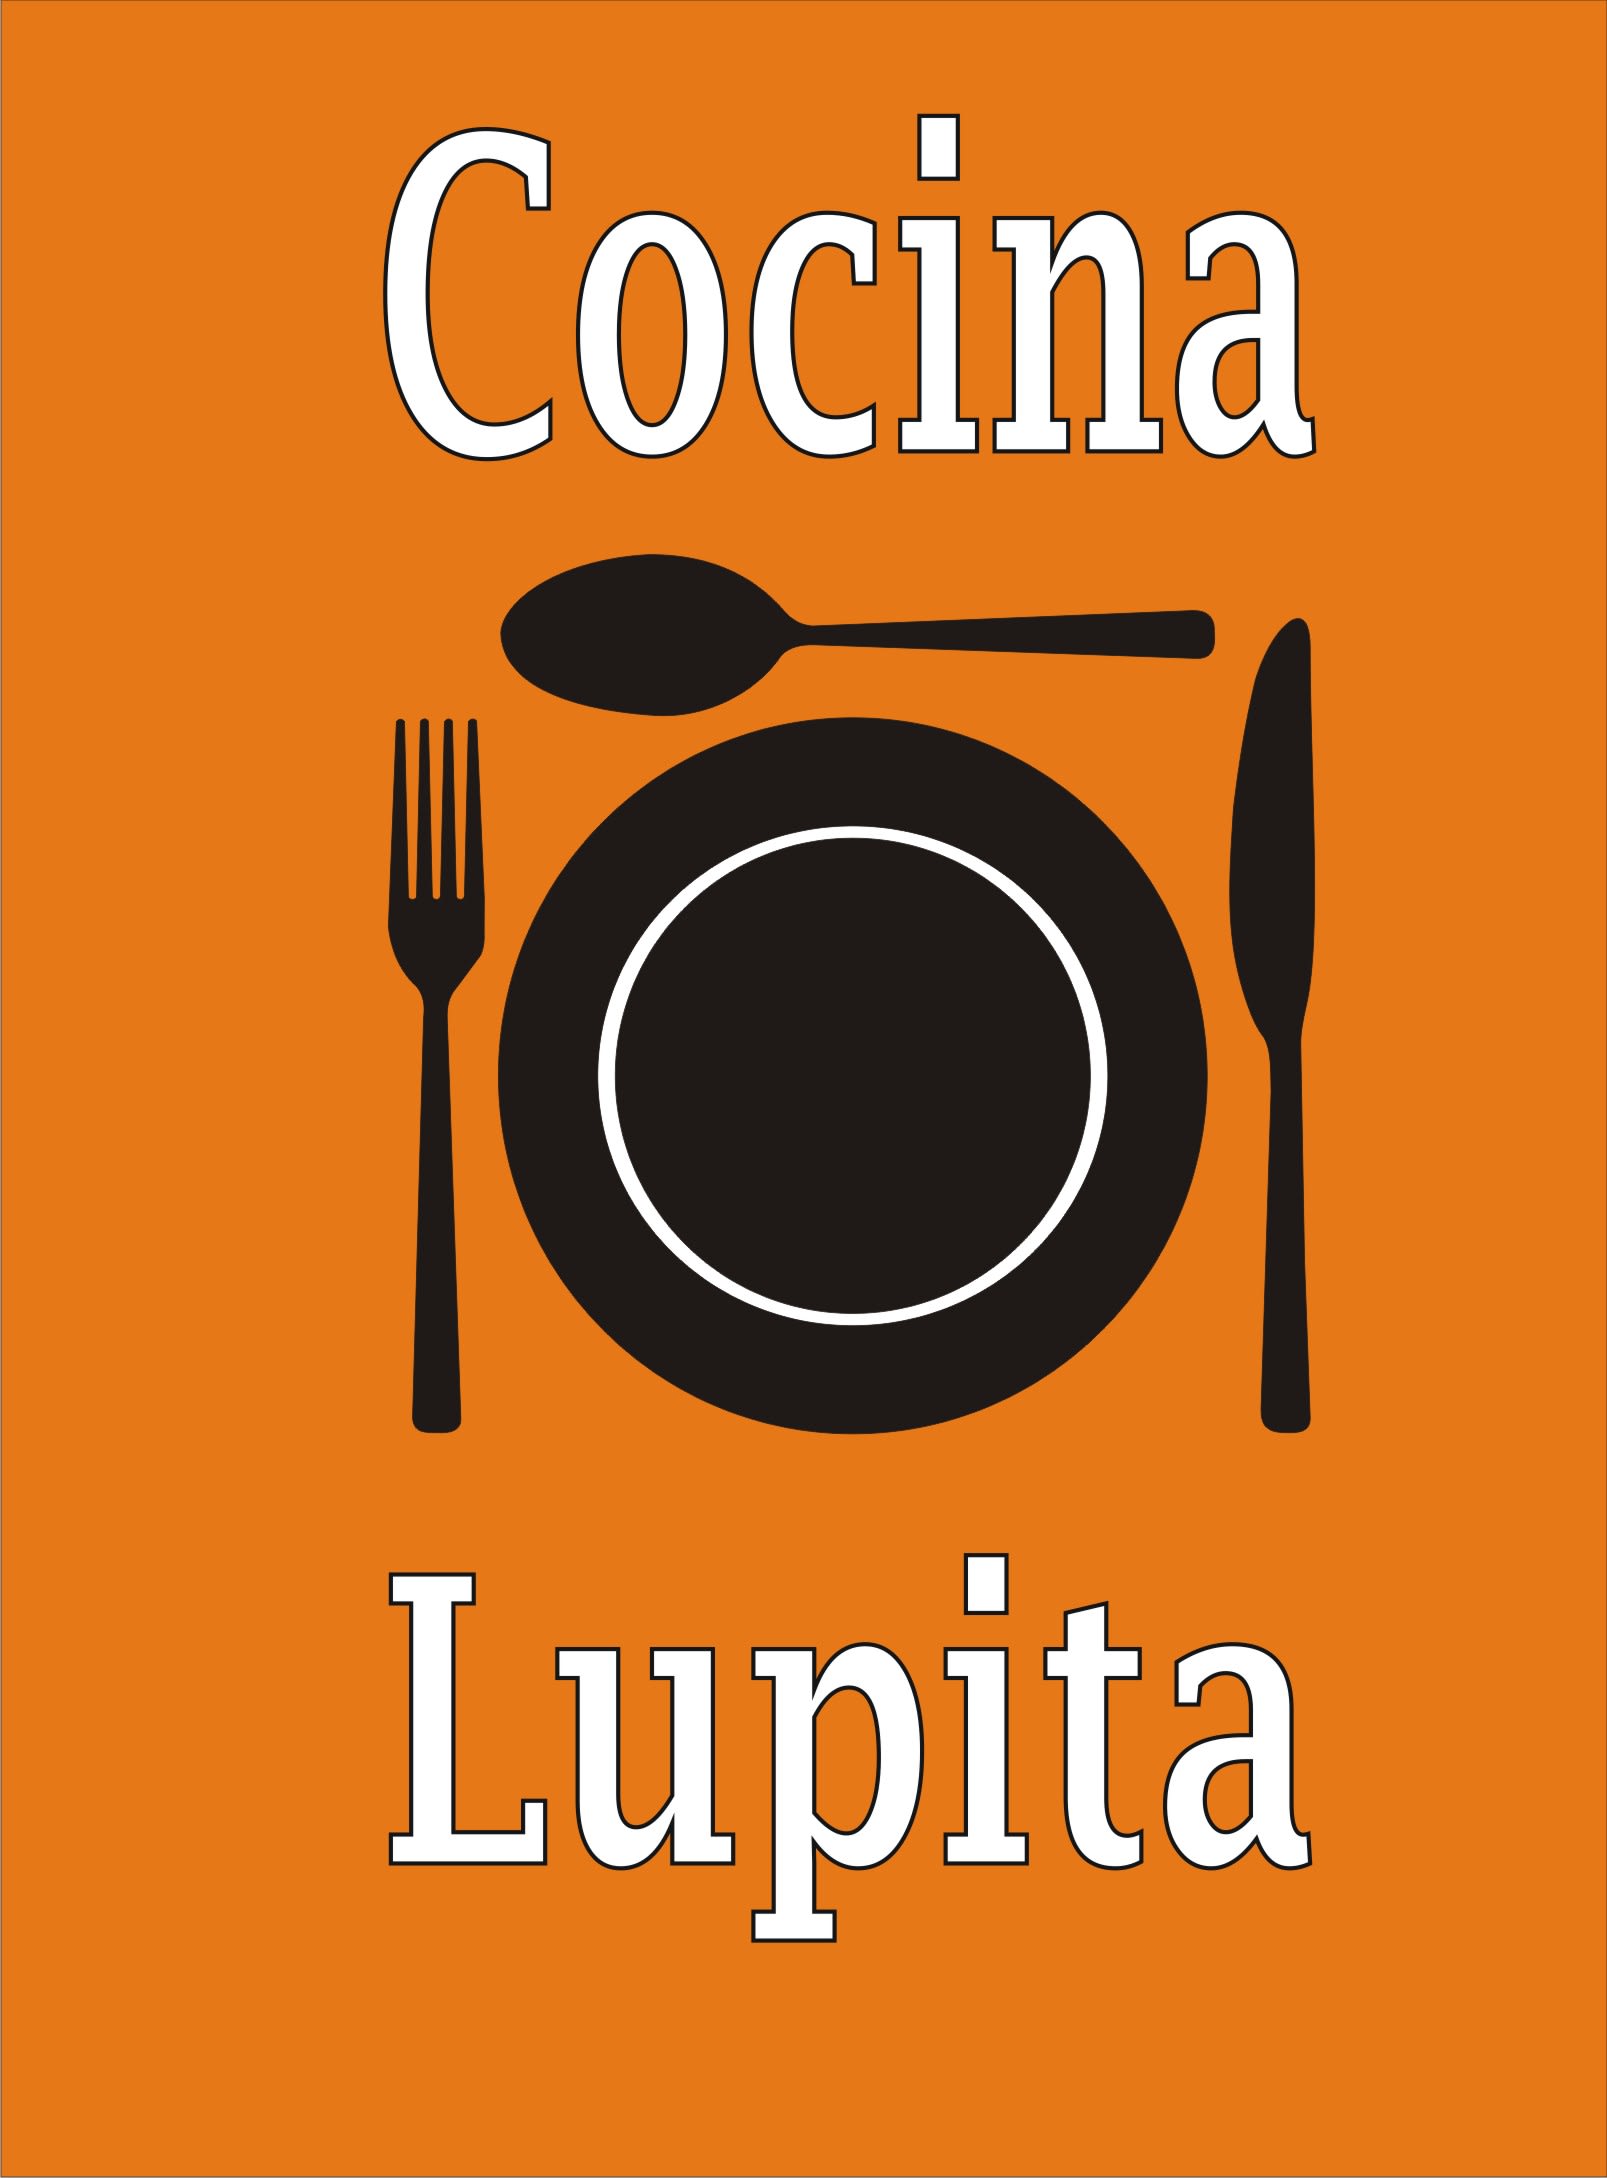 Cocina Lupita